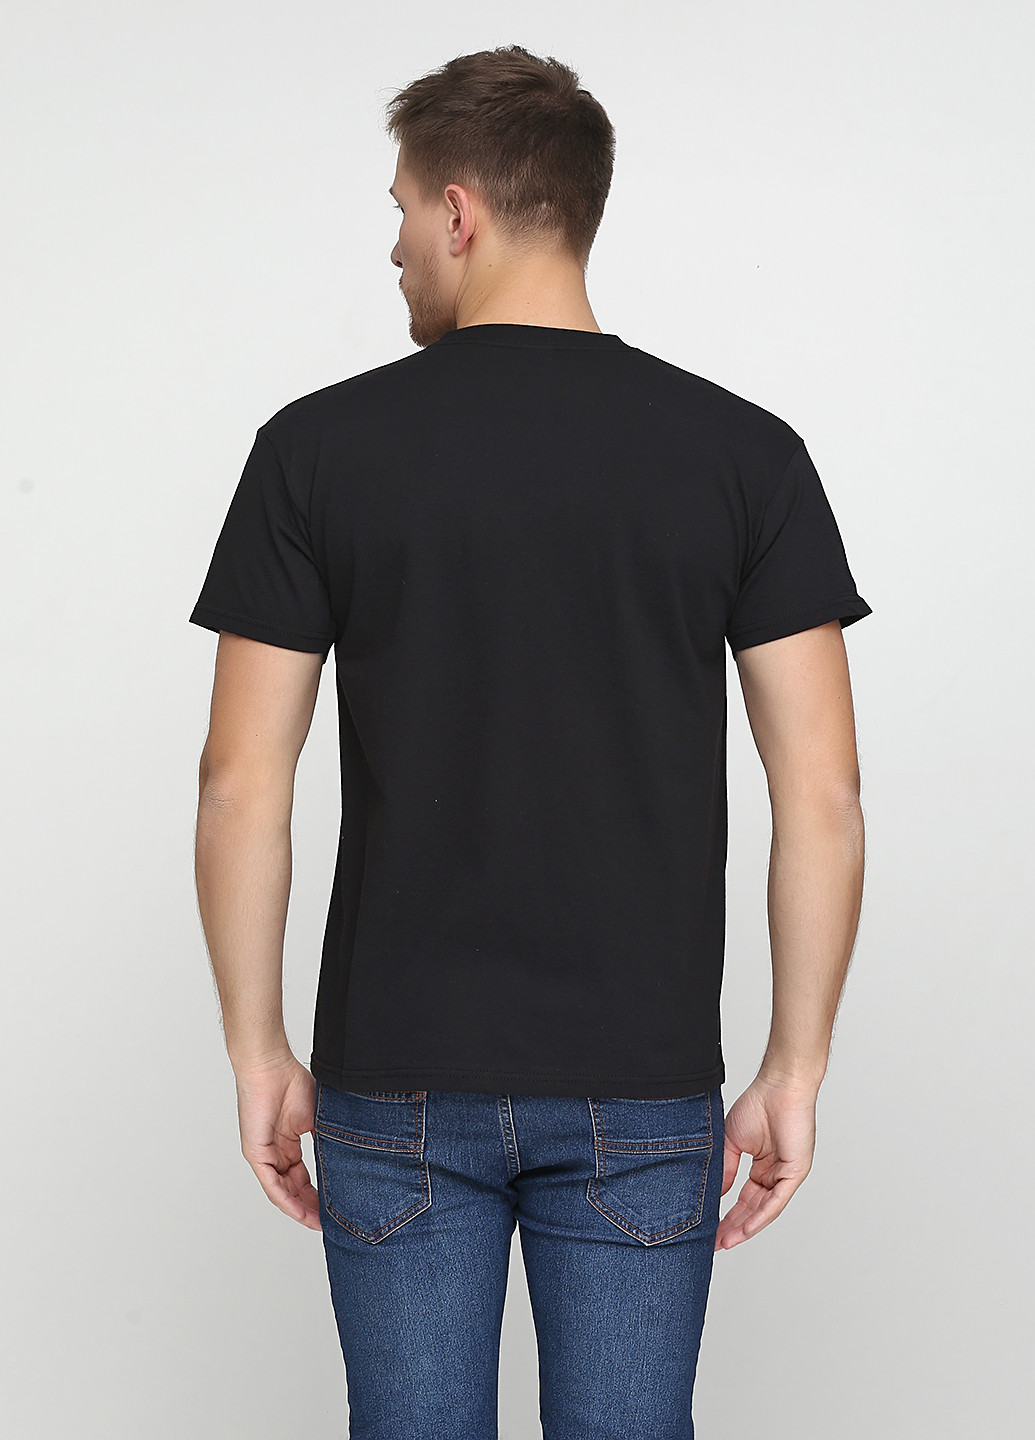 Черная футболка Tryapos